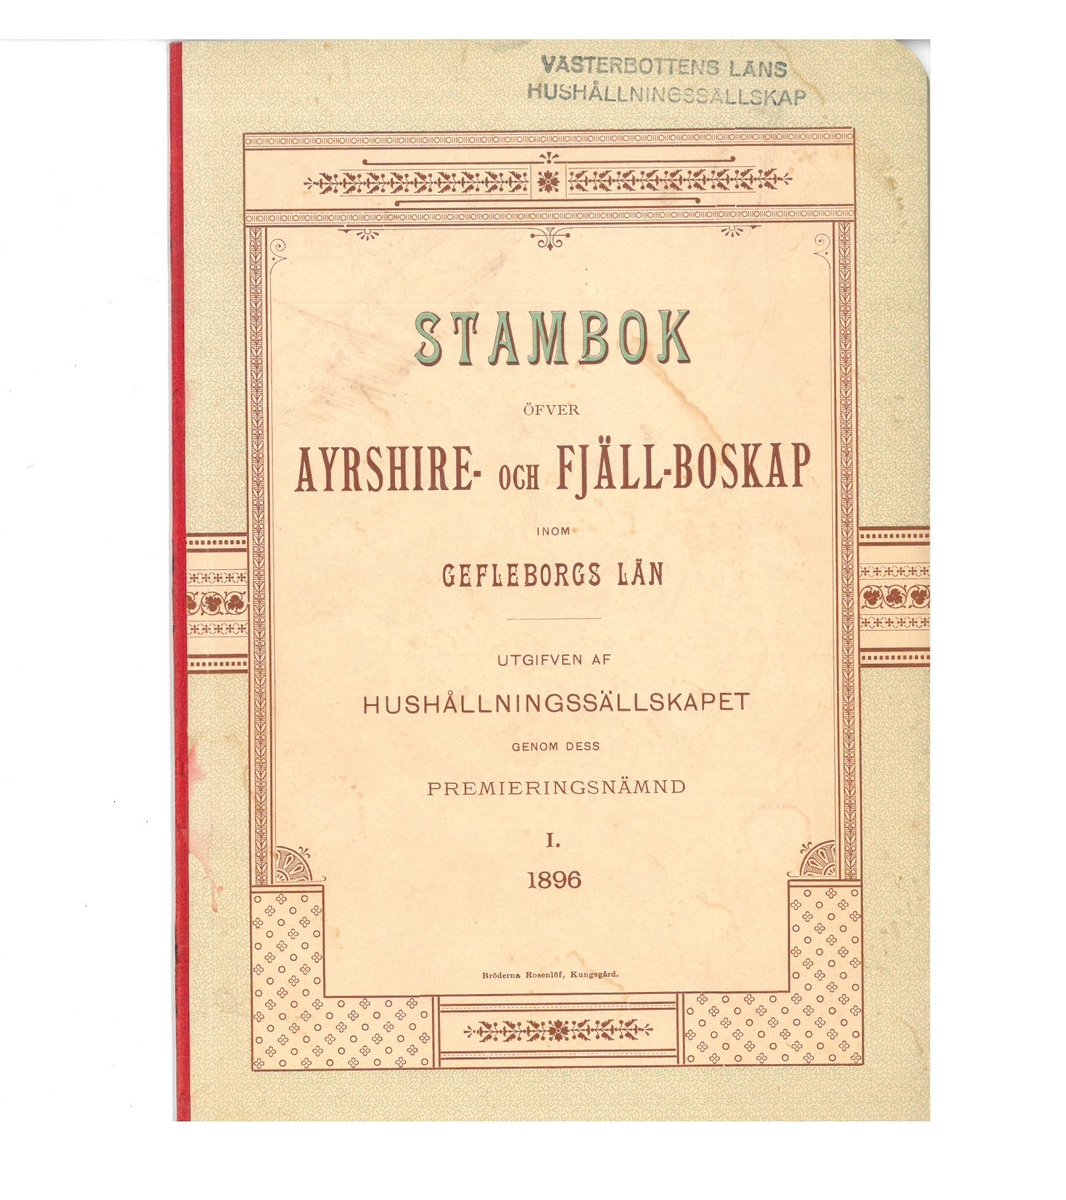 Stambok öfver Ayrshire- och fjällboskap inom Gävleborgslän 1896. Se nedan för nedladdningsbar PDF.